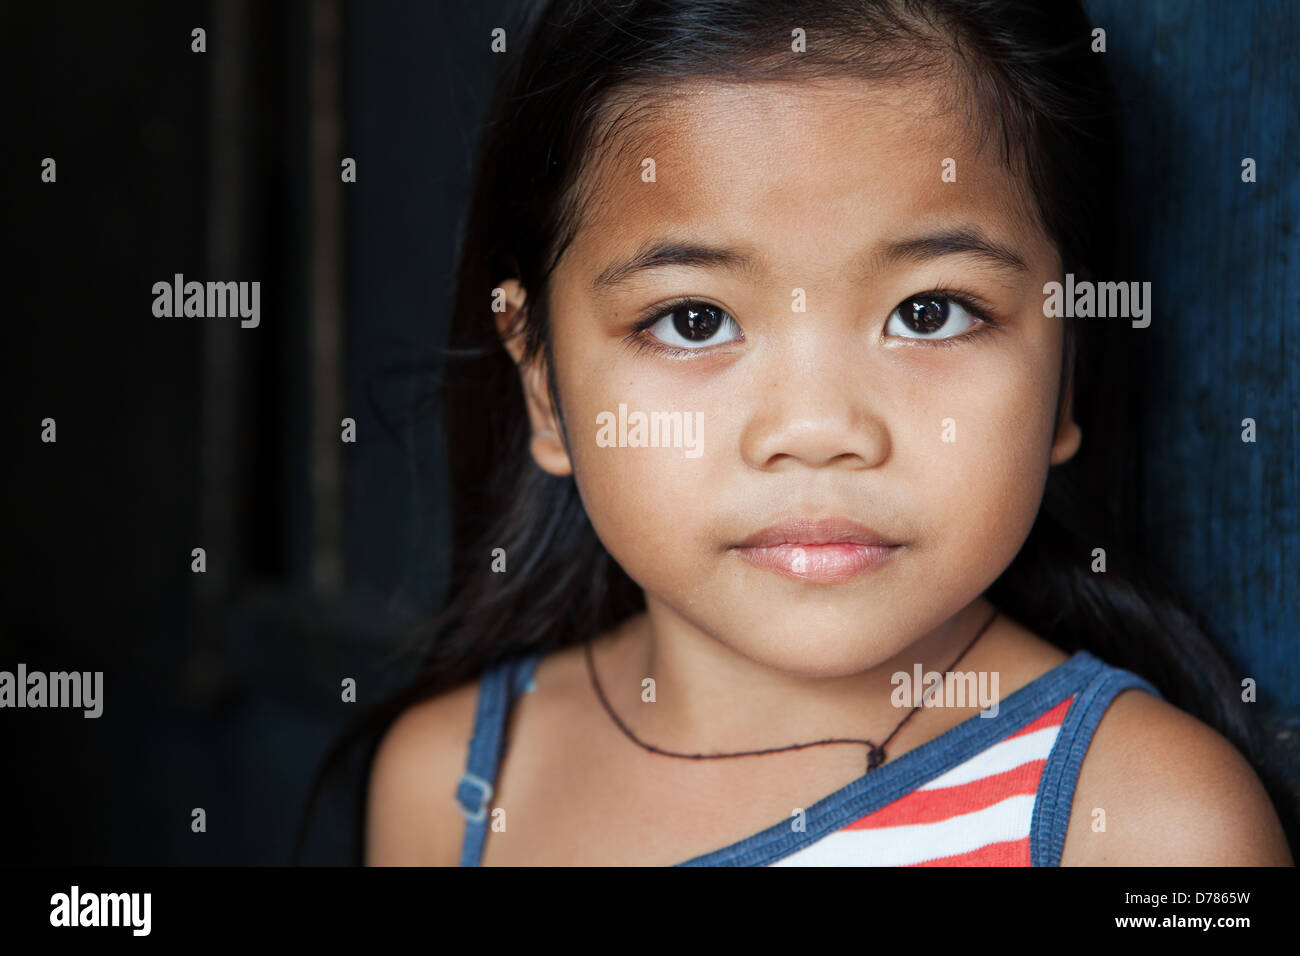 Portrait enfant asiatique - jeune fille des Philippines contre mur - lumière naturelle Banque D'Images